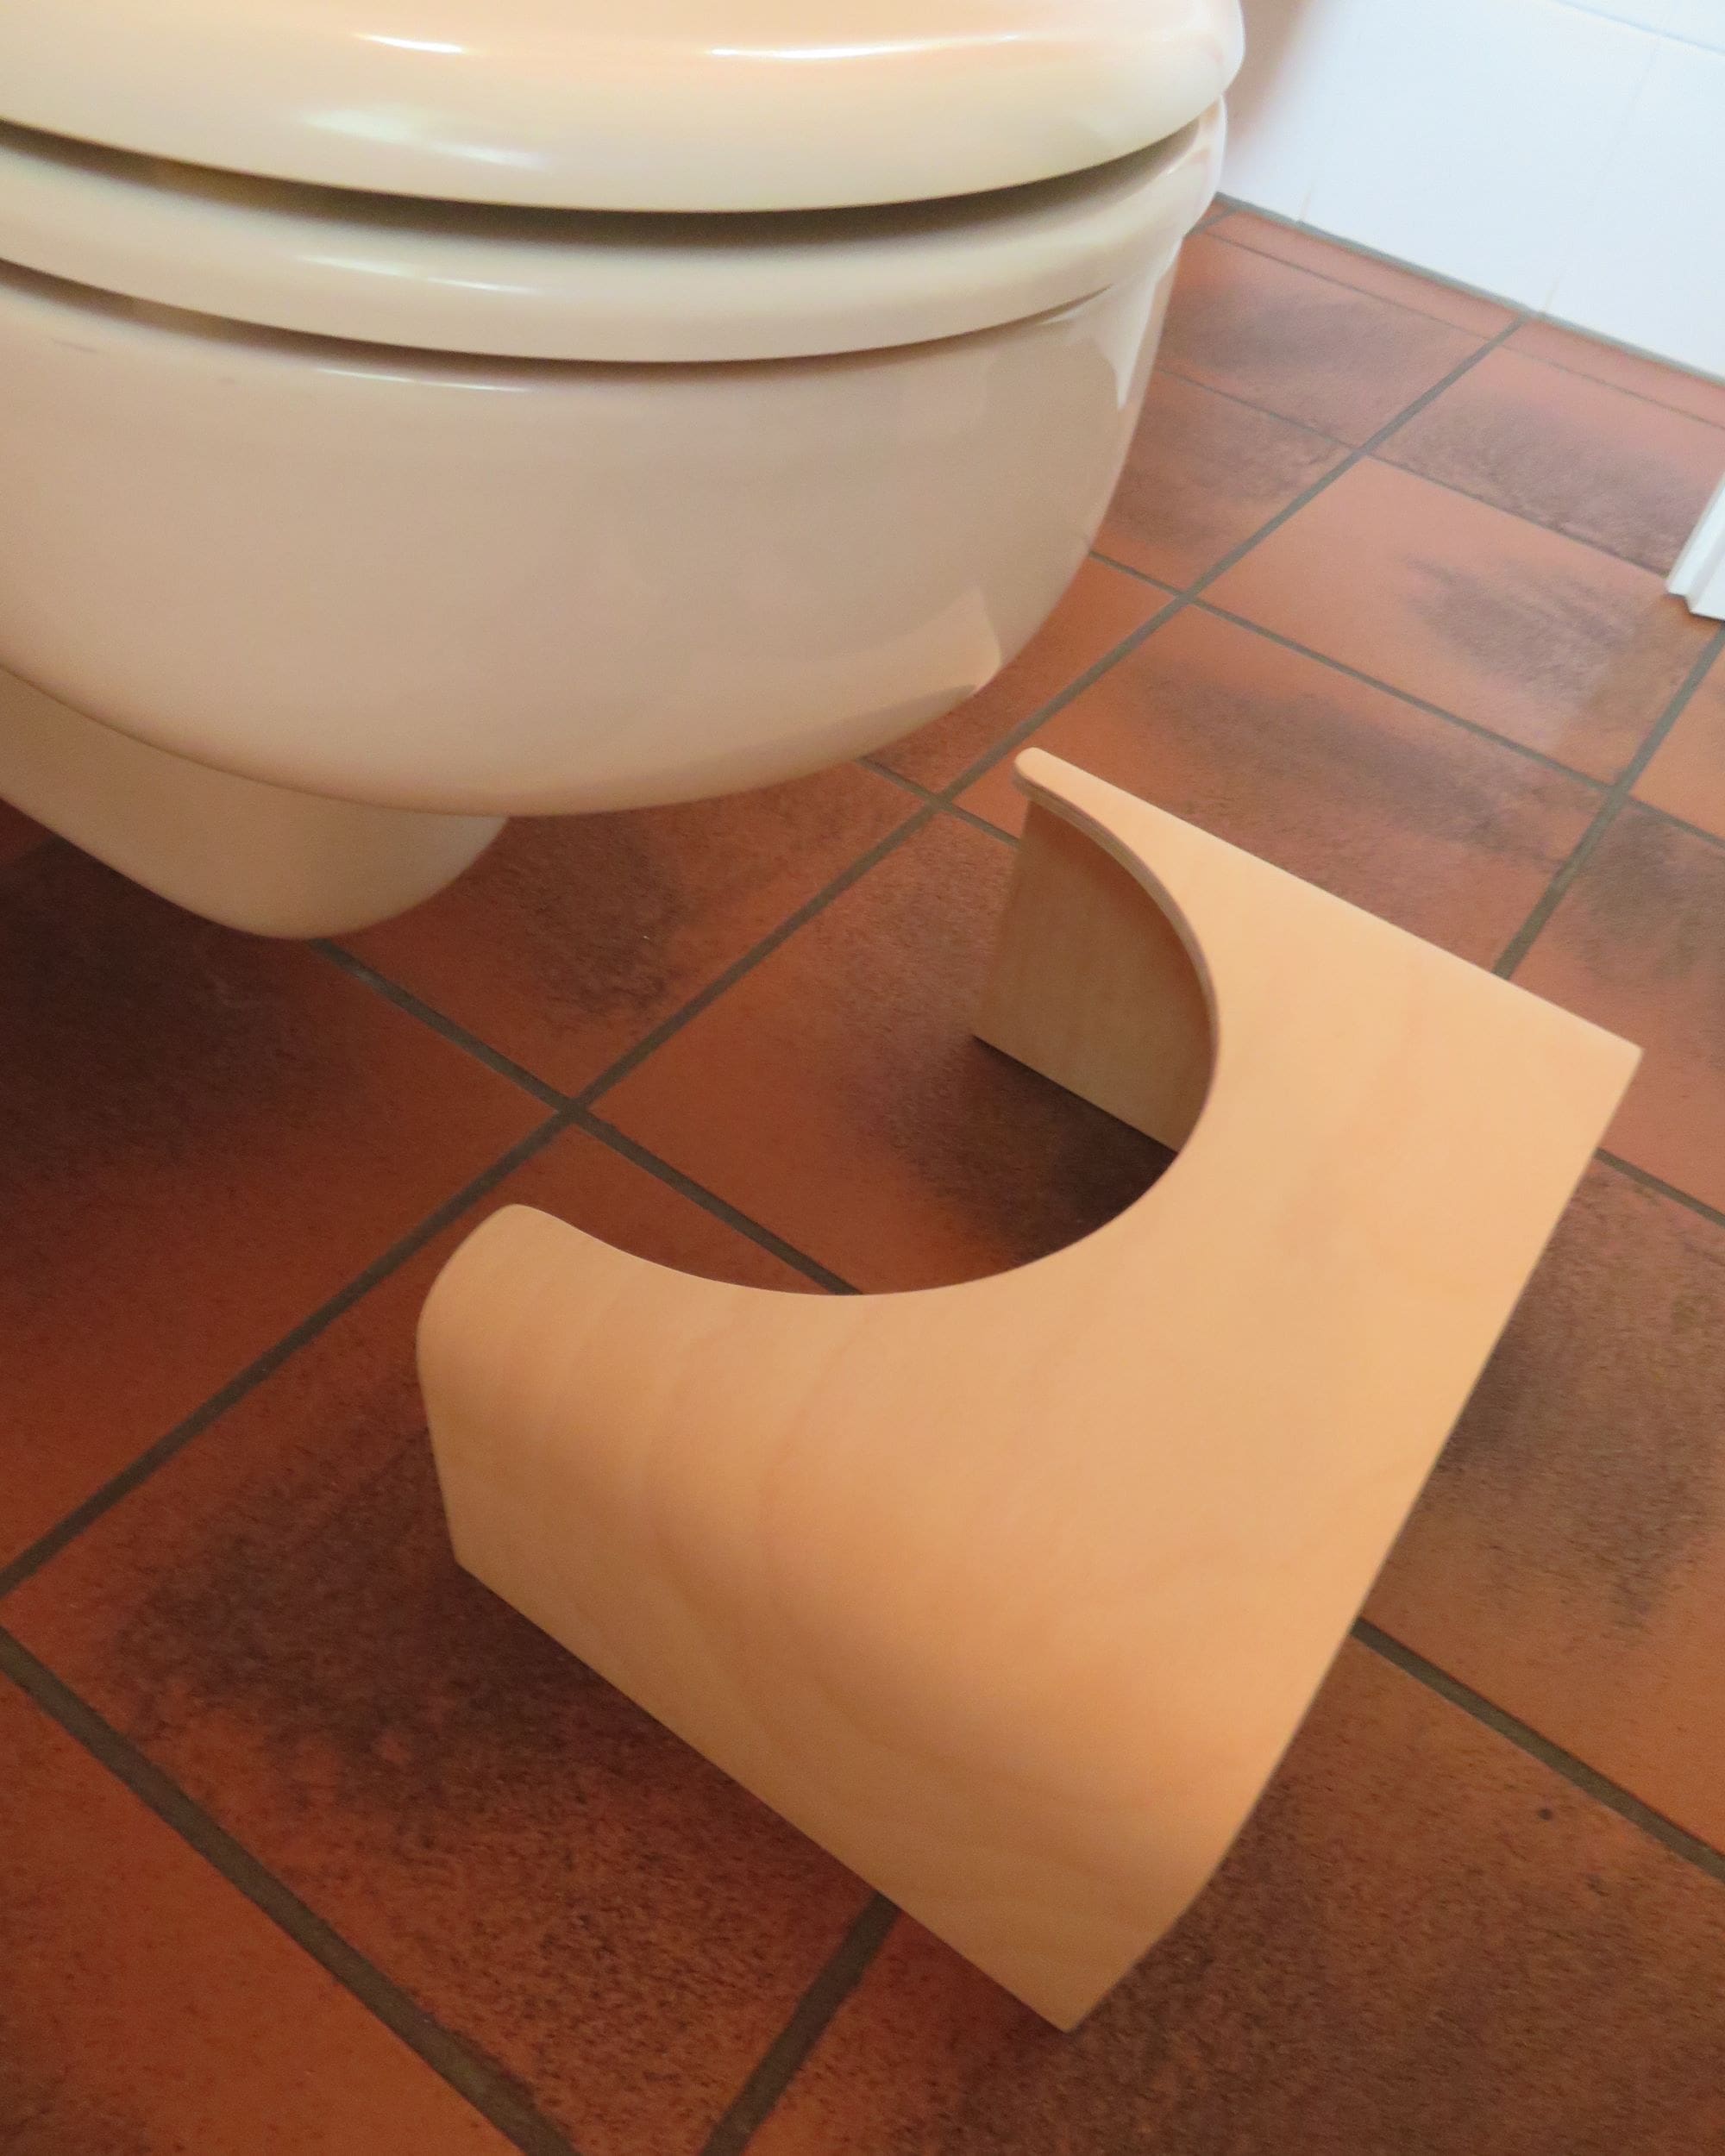 Toilettenhocker aus Holz stehend vor Toilette